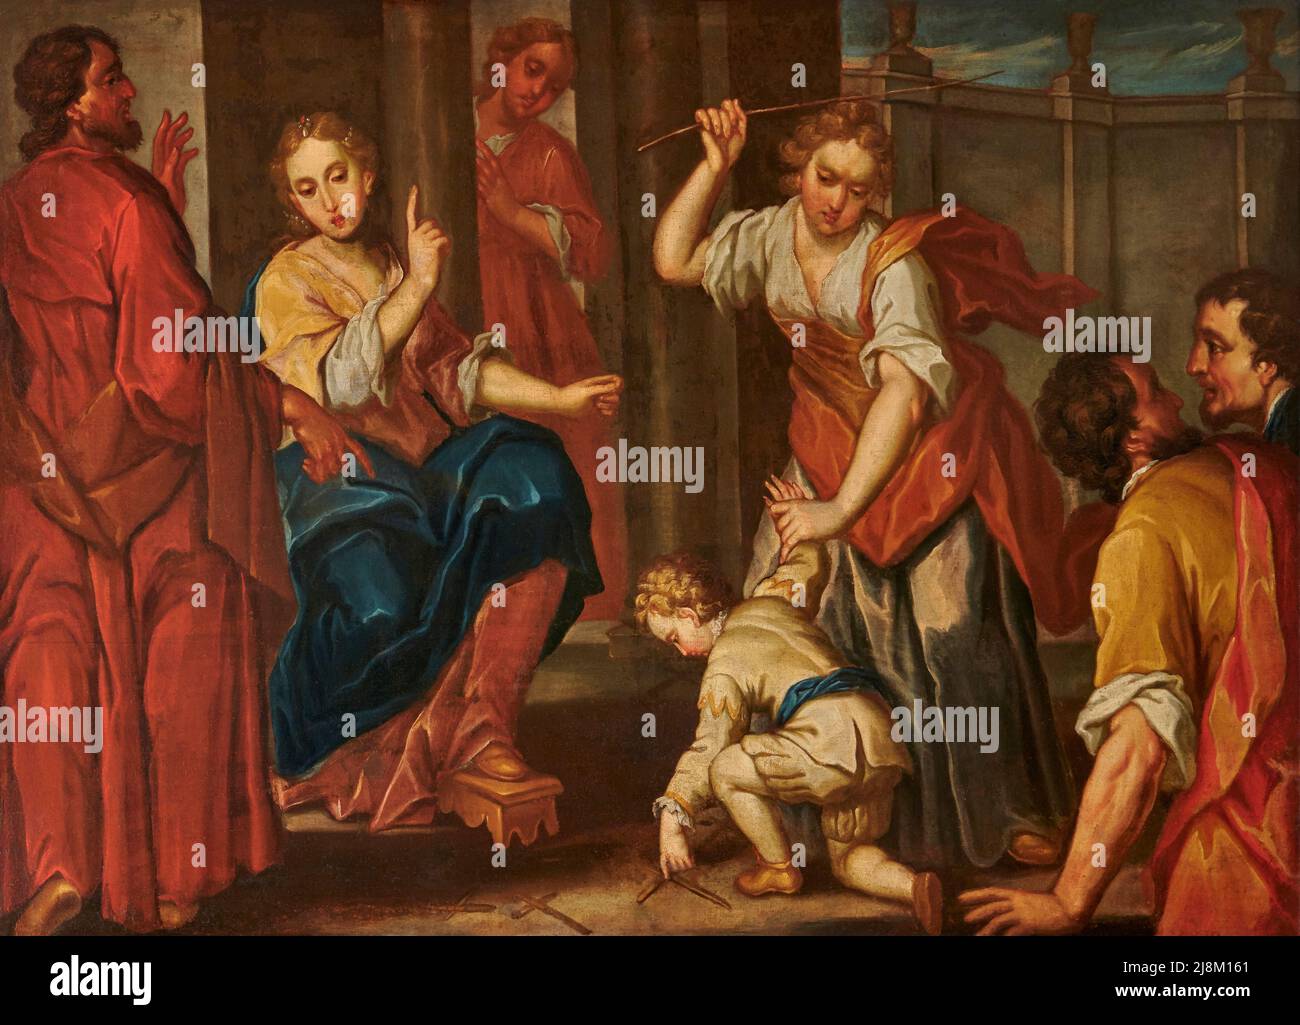 San Bassiano Bambino traccia croci sul terreno - olio su tela - pittore lombardo della seconda metà del XVII secolo - Lodi Vecchio (Lodi) ,Italia, c Banque D'Images